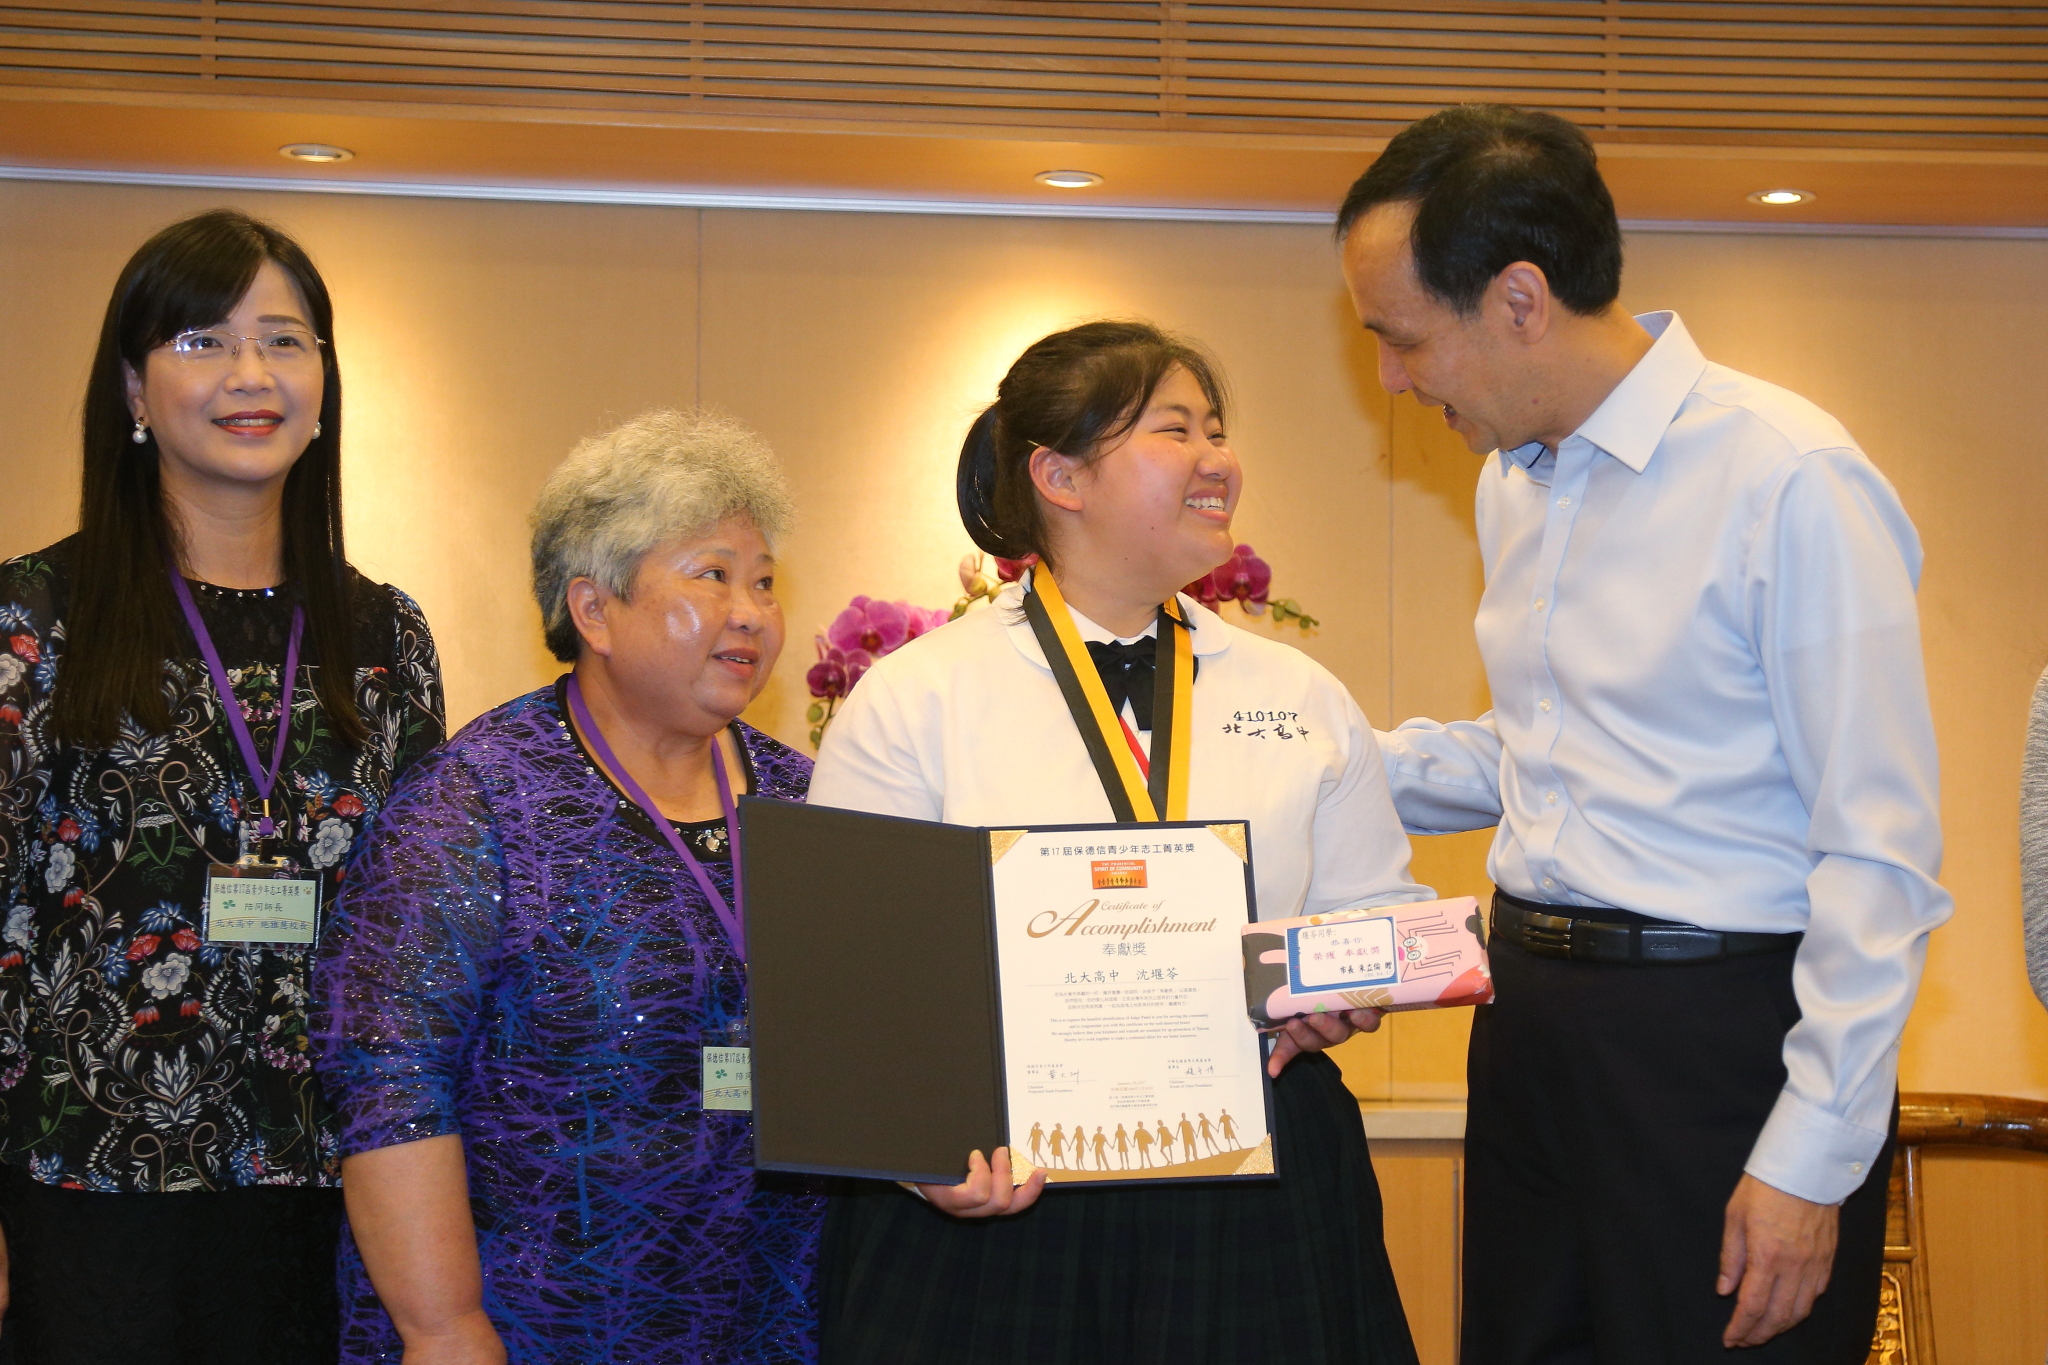 朱市長讚許得獎同學無私奉獻的精神，也期勉更多青少年朋友奉獻自我服務社會